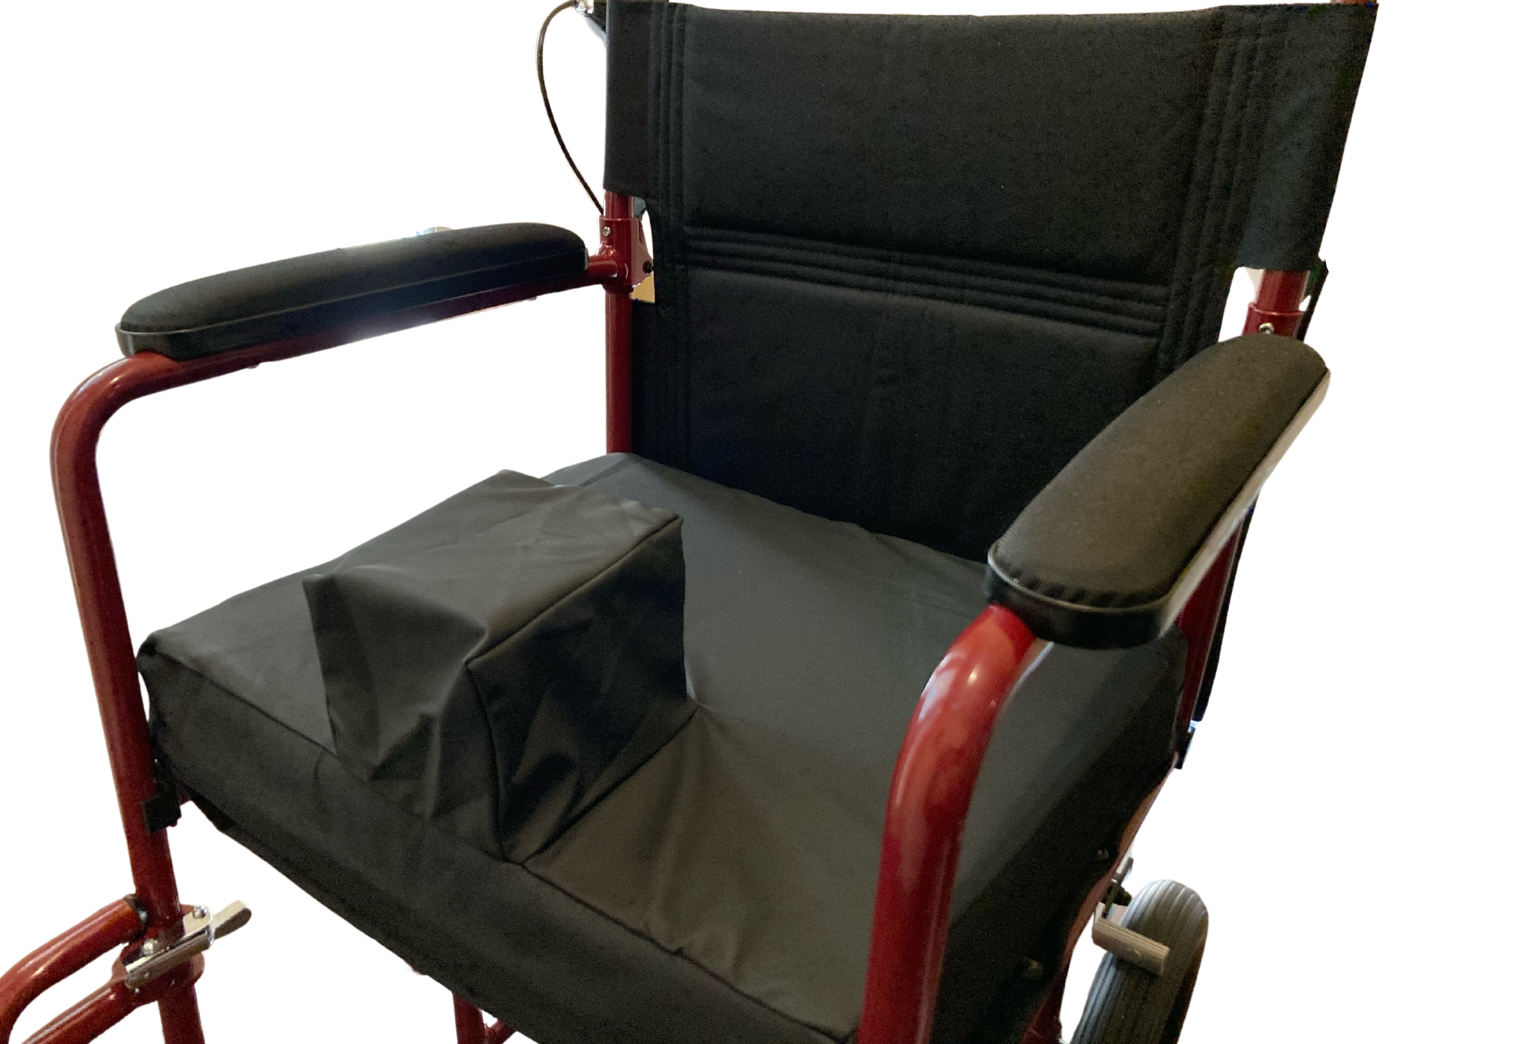 Pommel Wheelchair Cushion Pad Non Slip Wheel Chair Padding